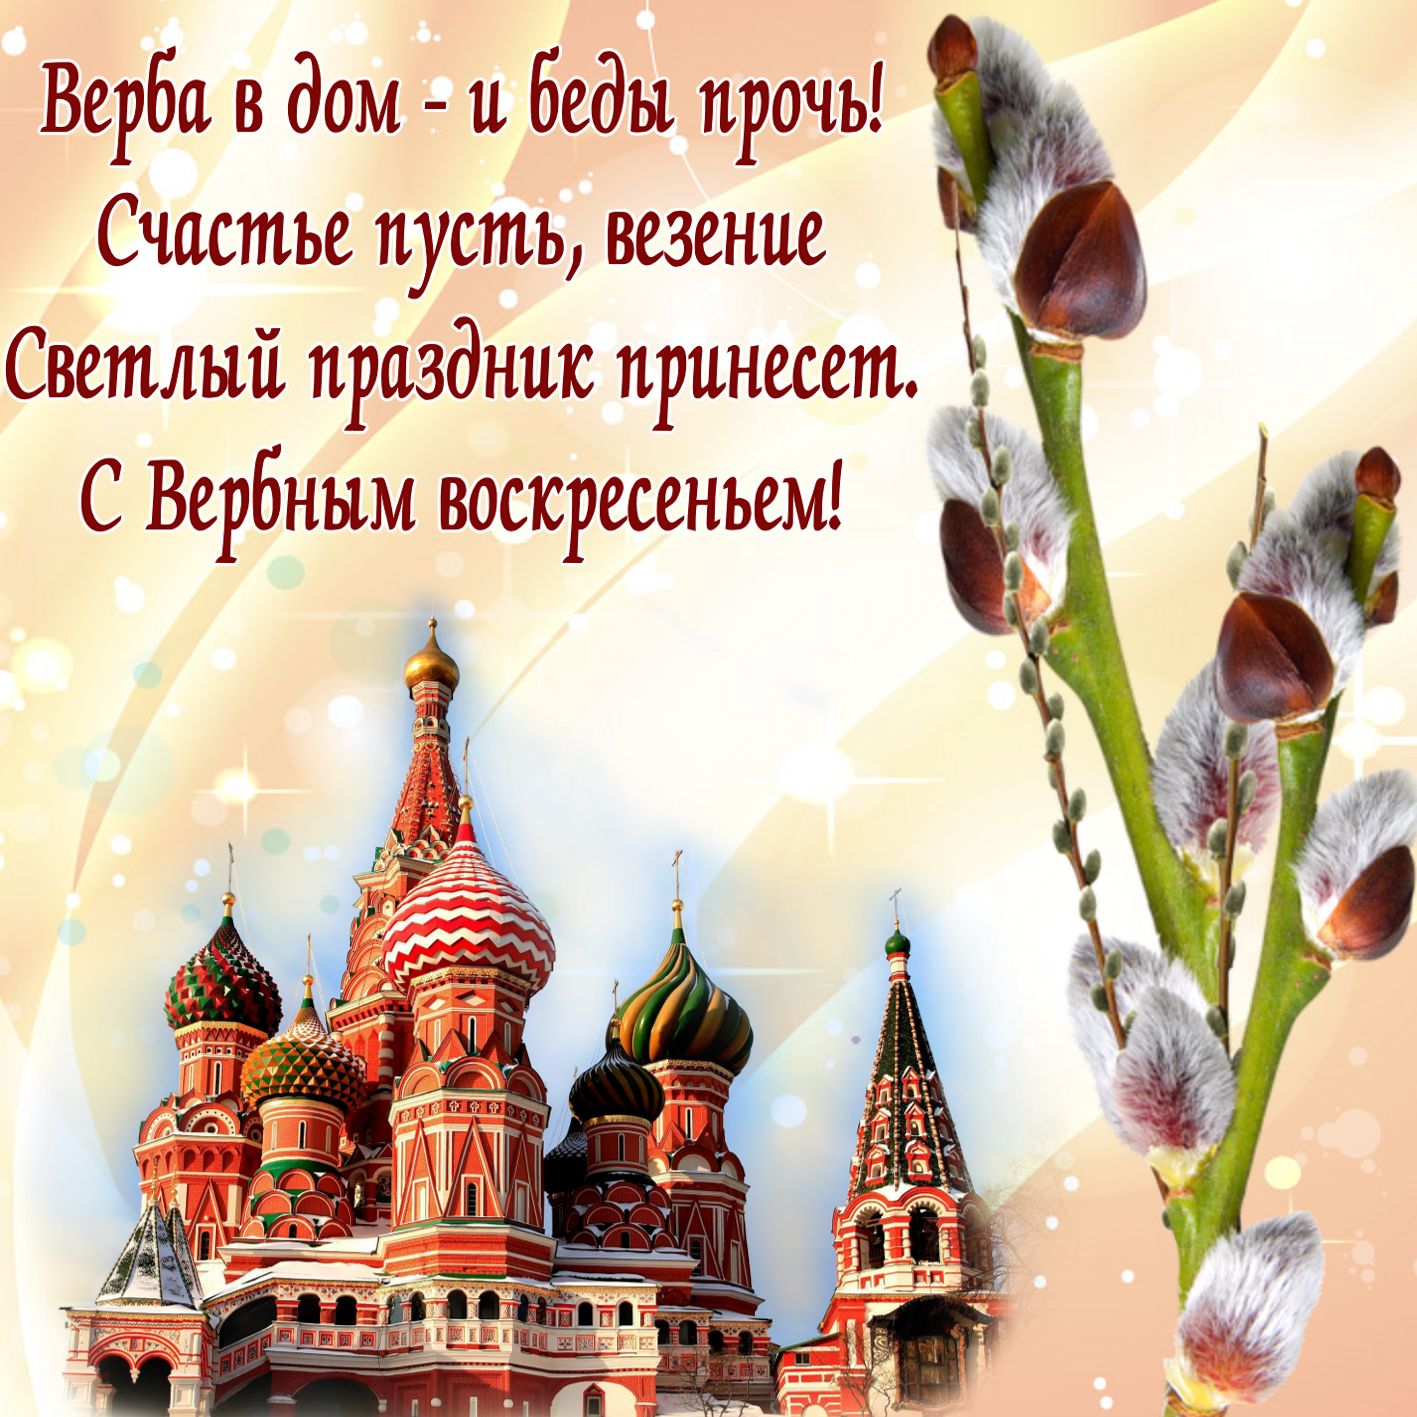 Как Ответить На Православное Поздравление С Праздником